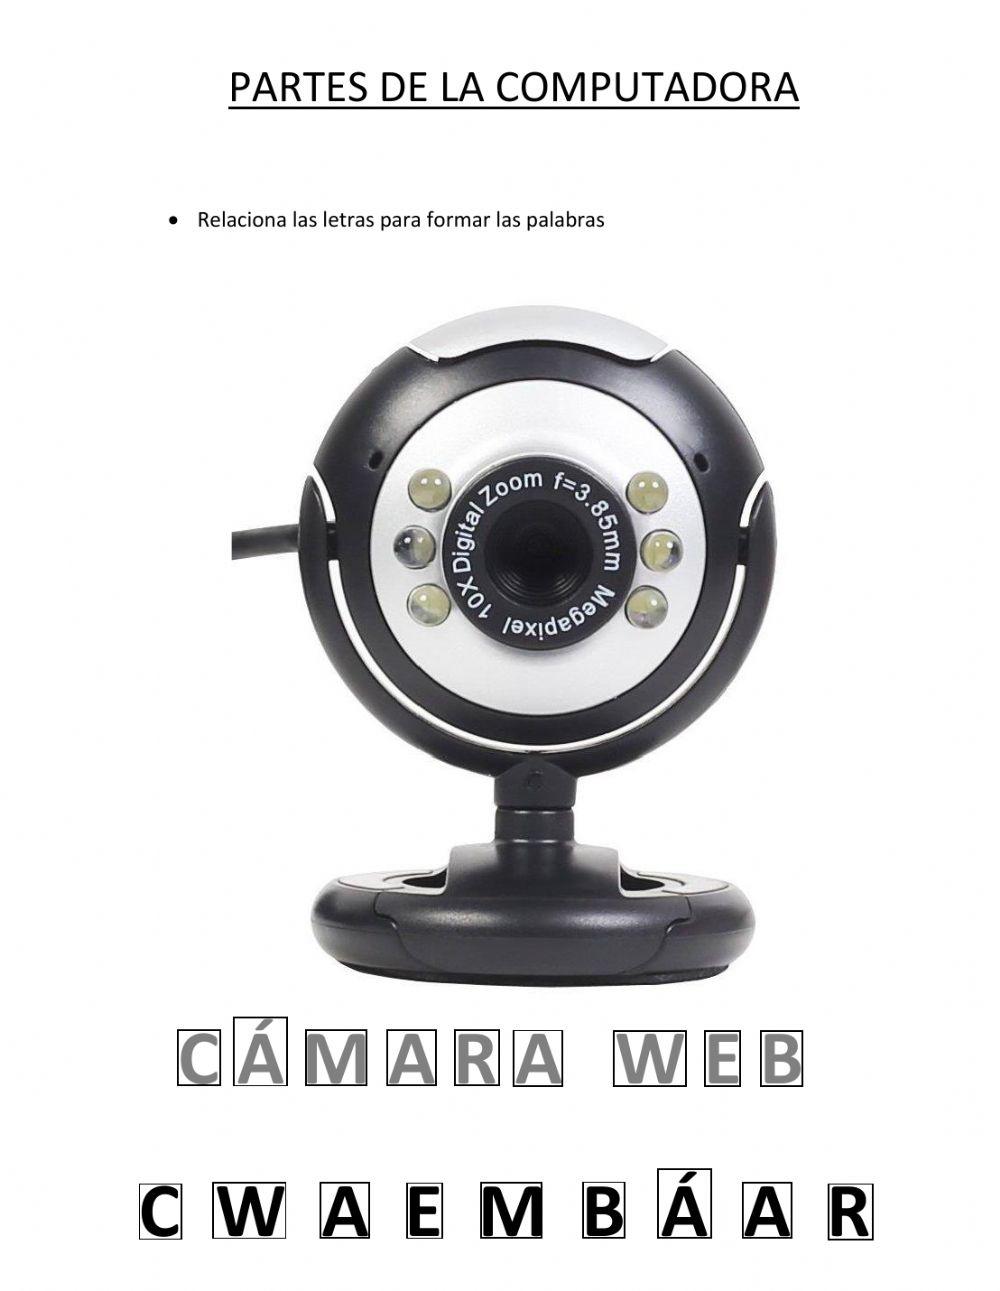 La cámara web